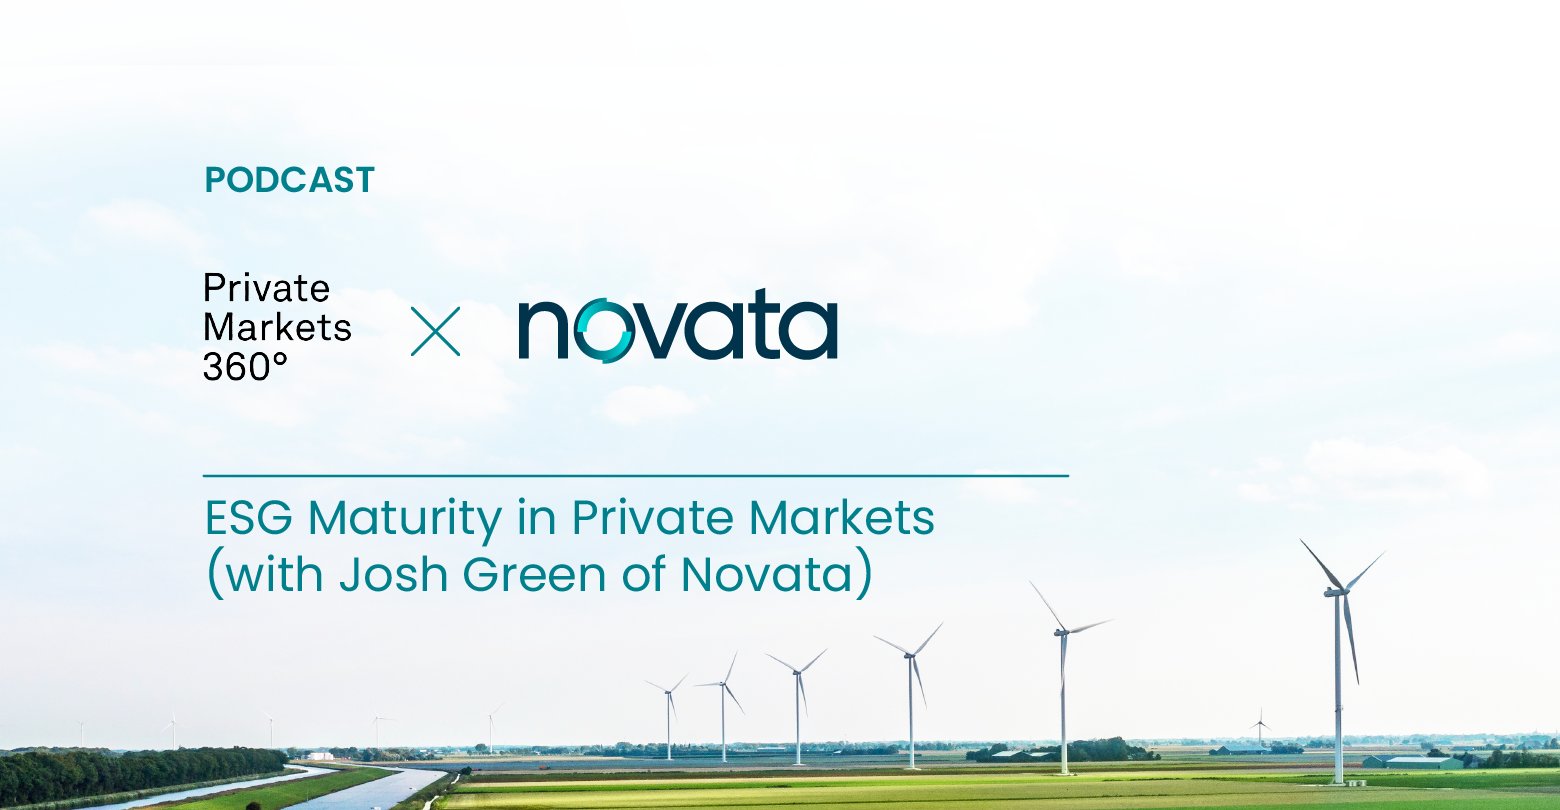 Private Markets 360 and Novata: ESG Maturity in Private Markets (with Josh Green of Novata)